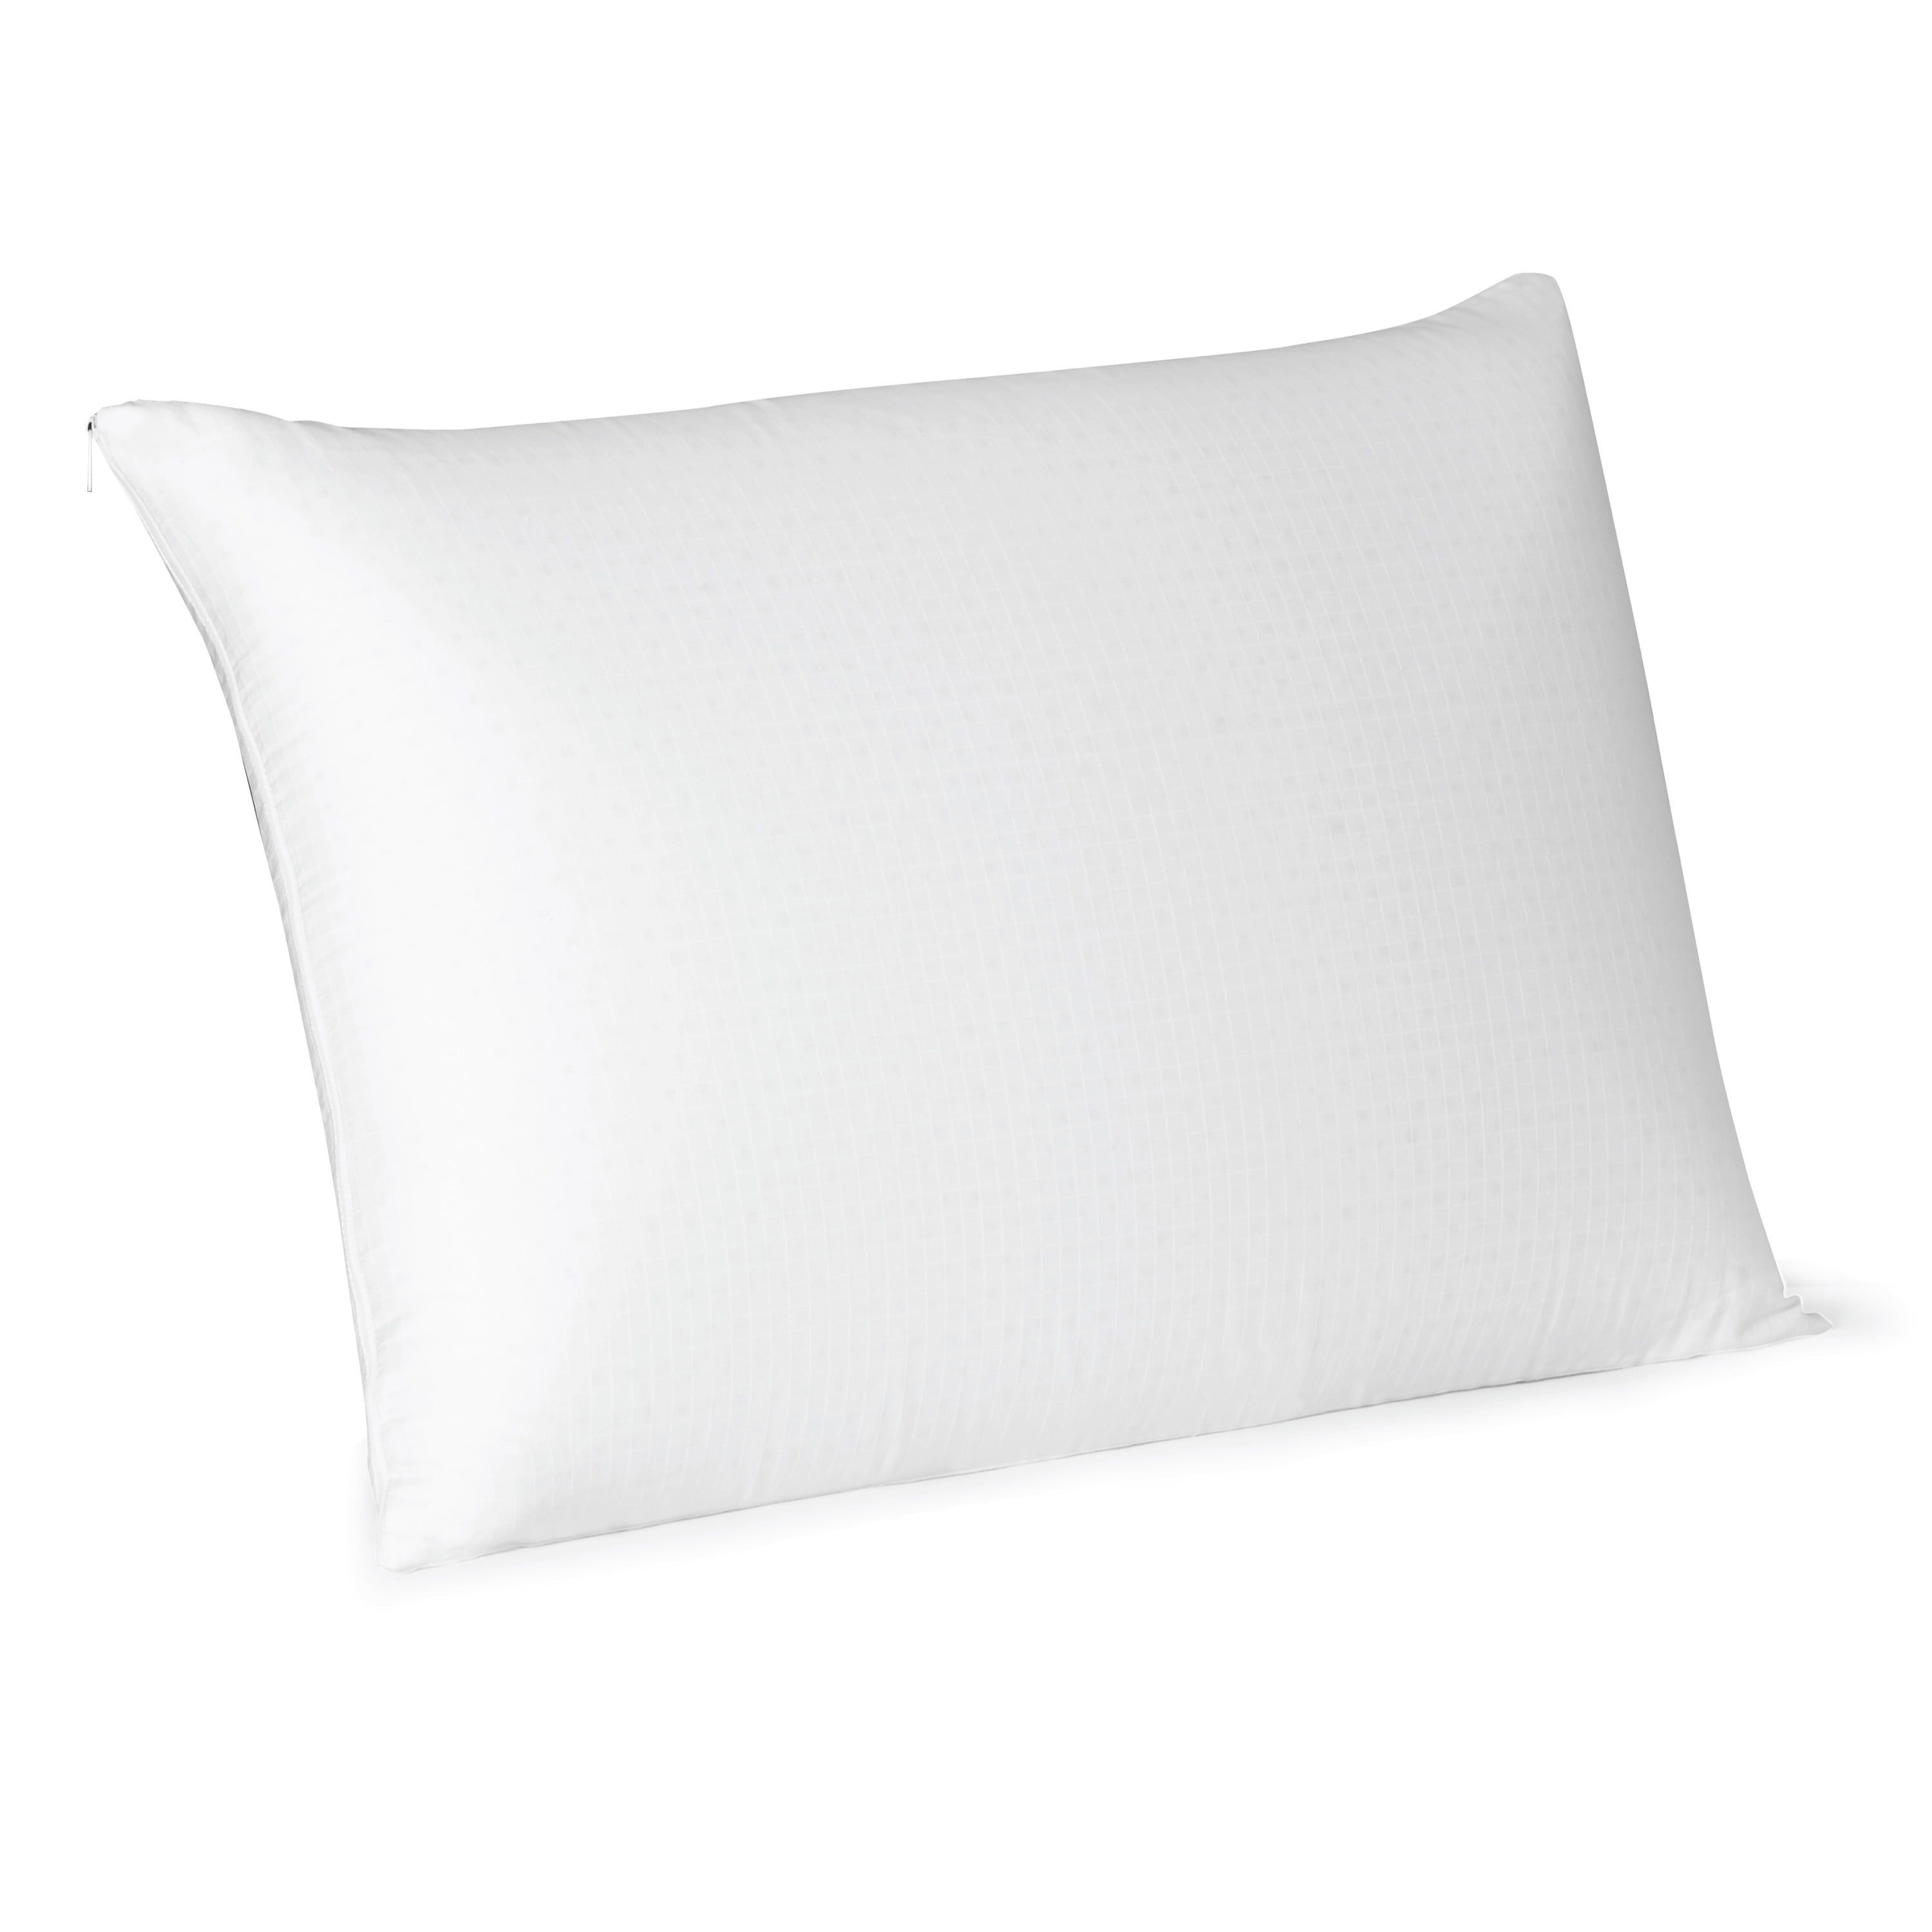 Queen Regular Shape Latex Foam Pillow Cotton Jersey Cover 